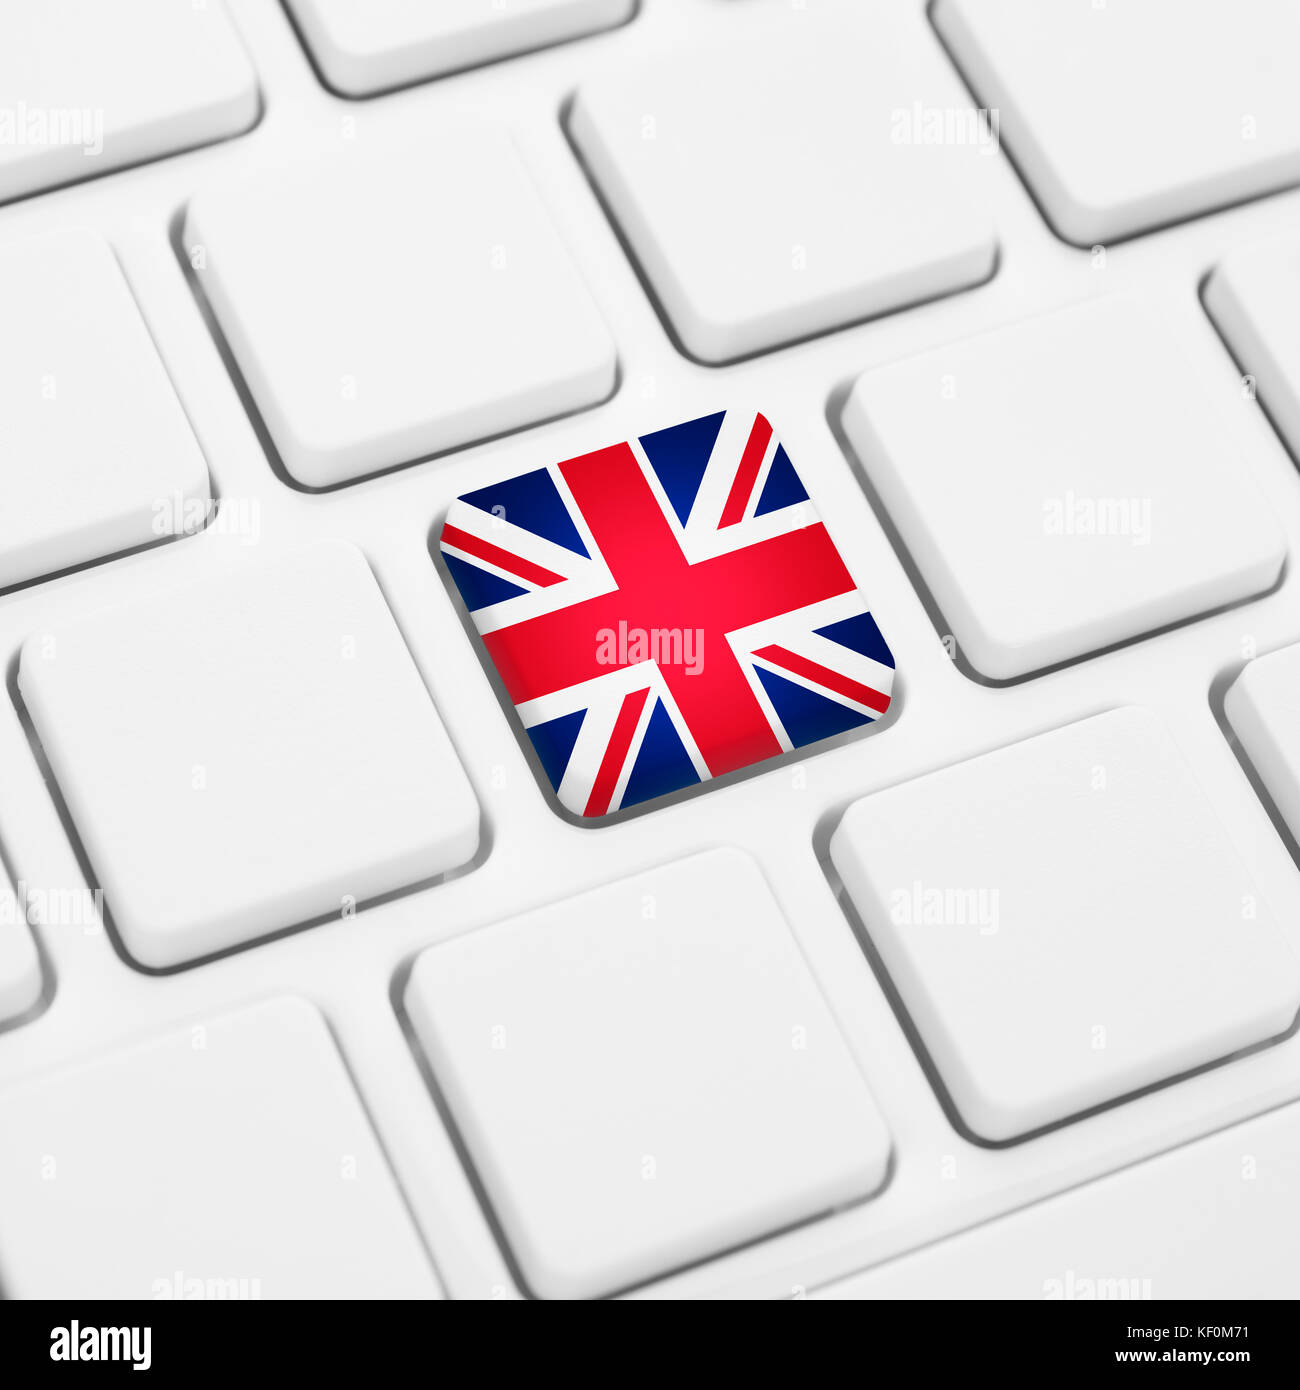 English language or UK web concept. United Kingdom flag button or key on white keyboard Stock Photo